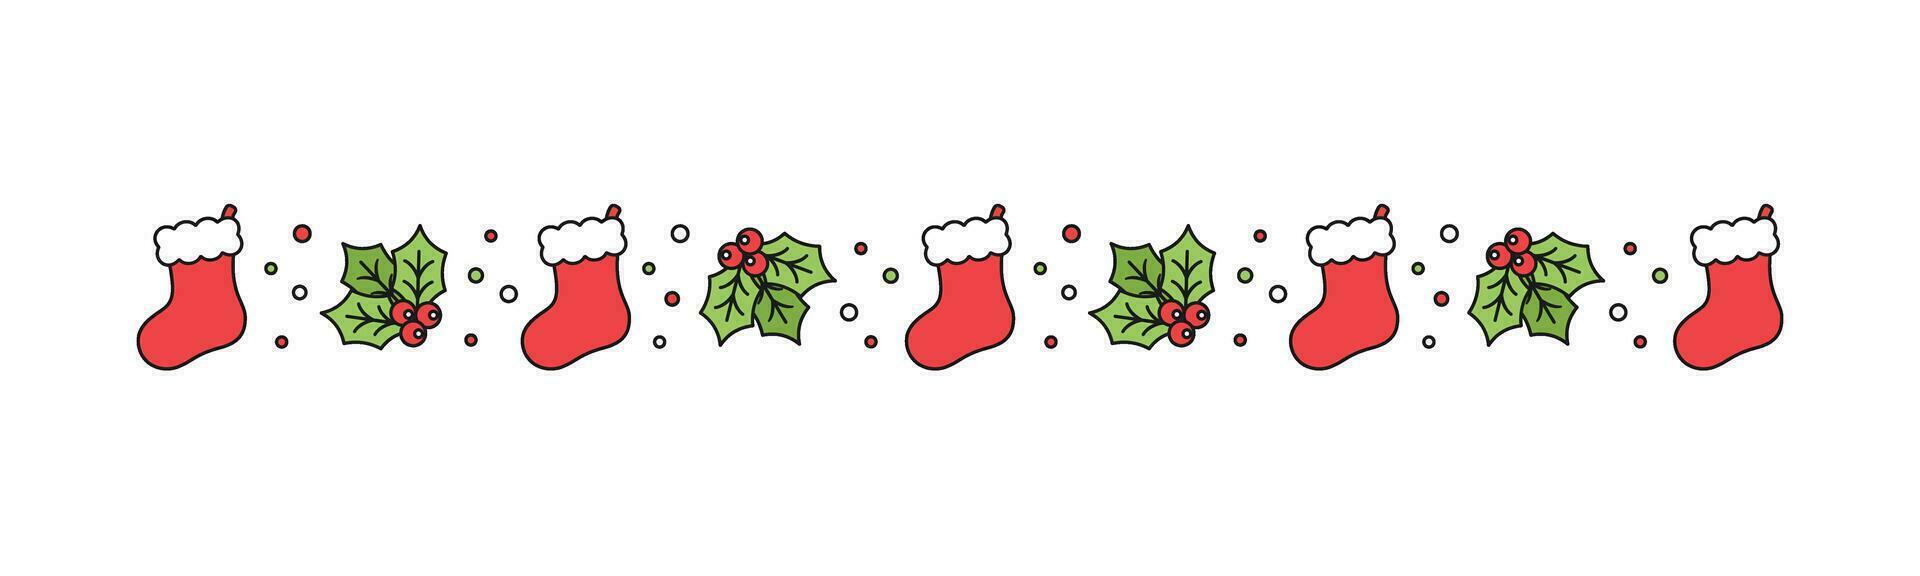 Navidad temática decorativo frontera y texto divisor, Navidad media y muérdago modelo. vector ilustración.